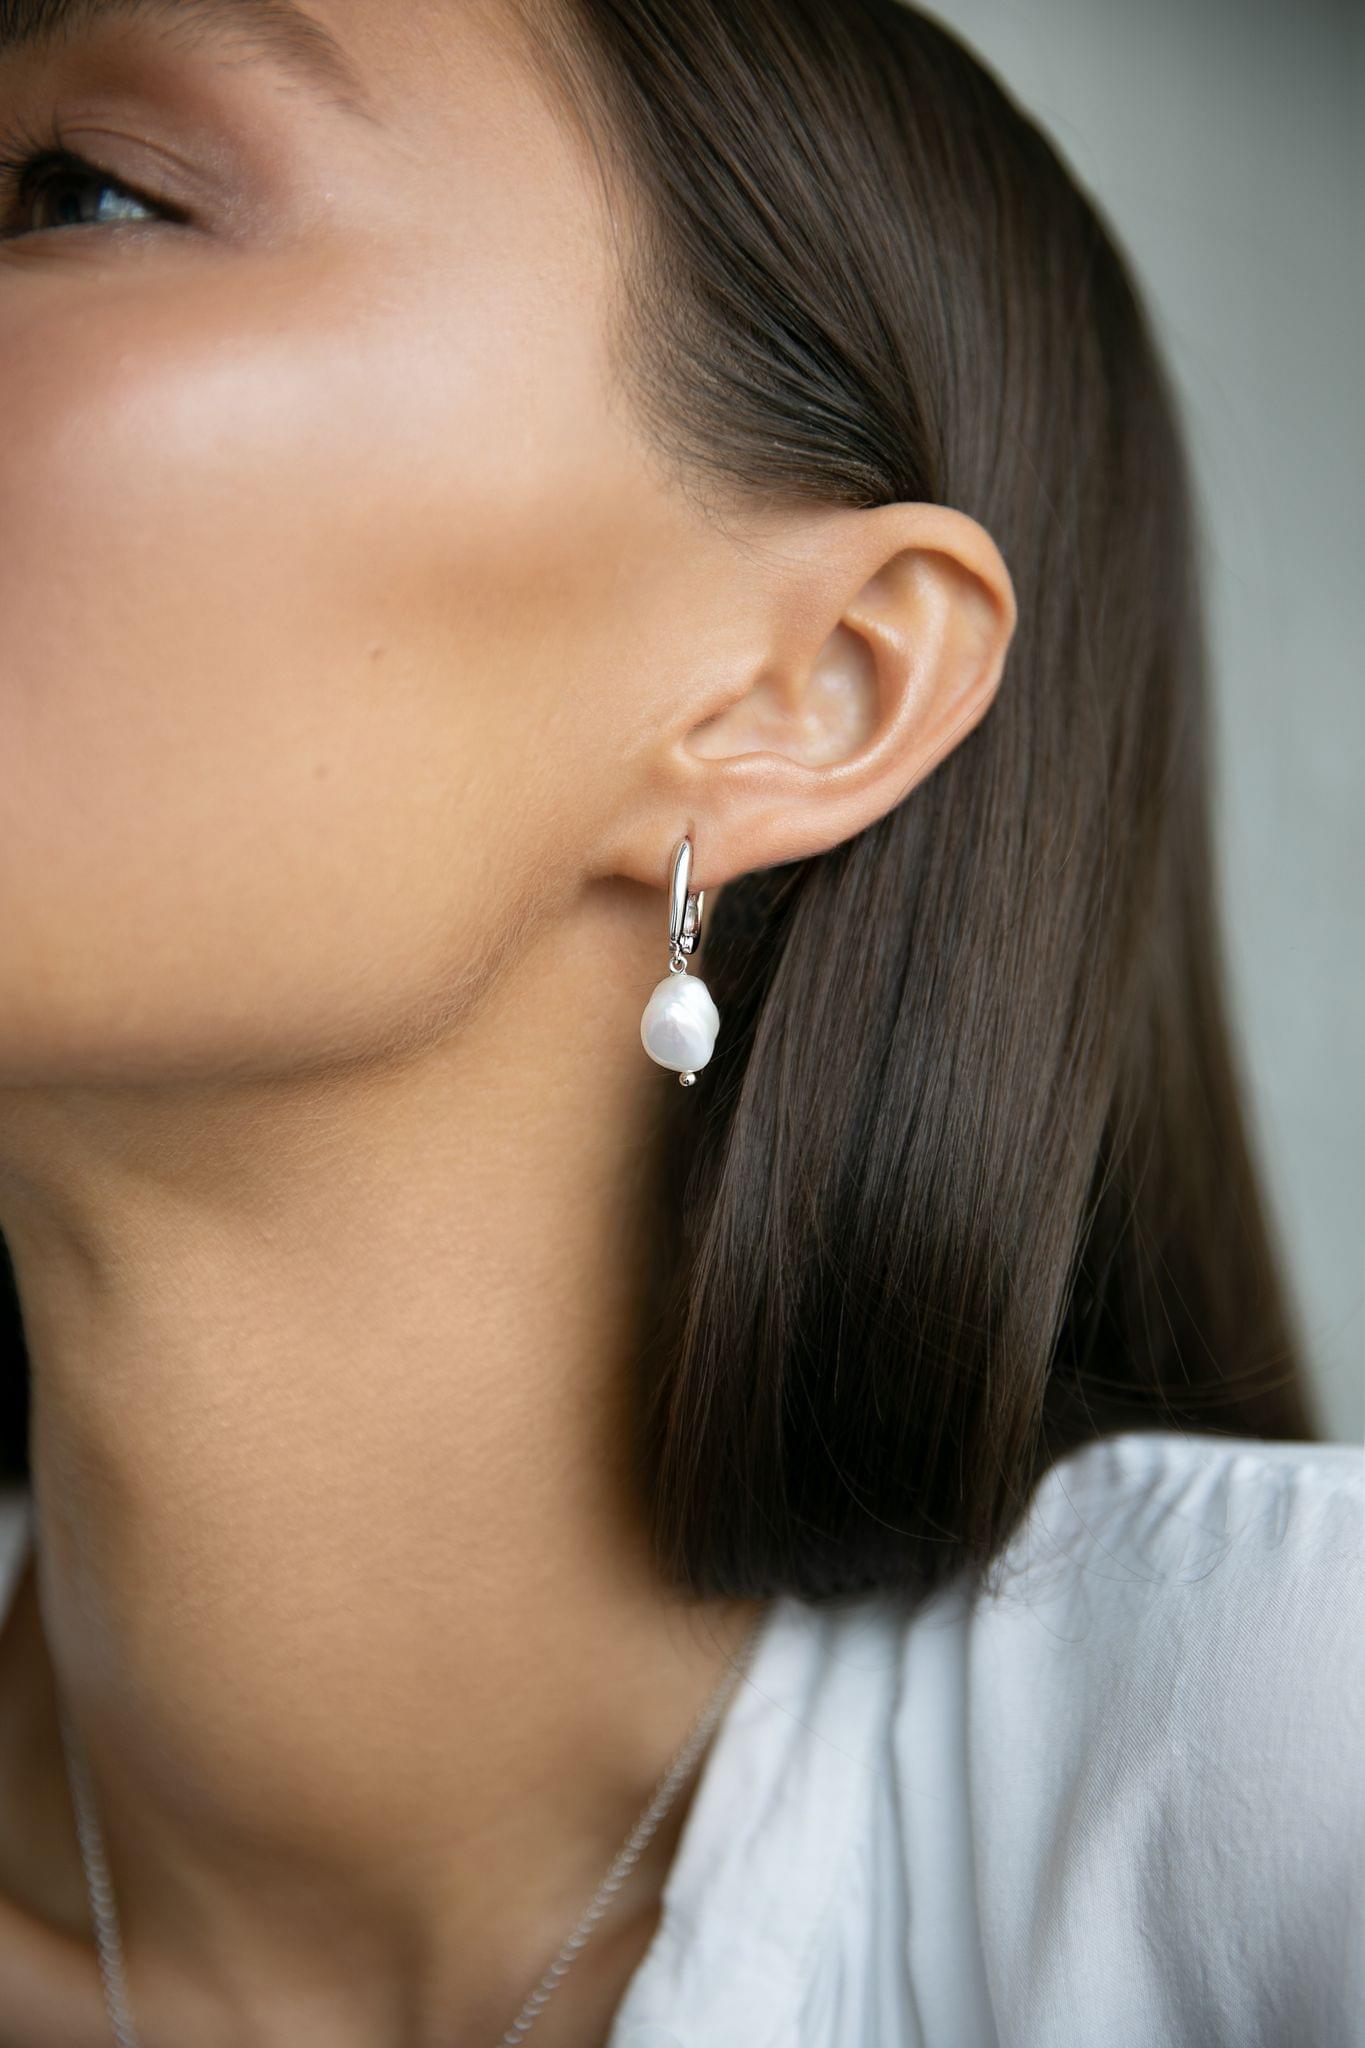 Women's Pearl Earrings - ER128